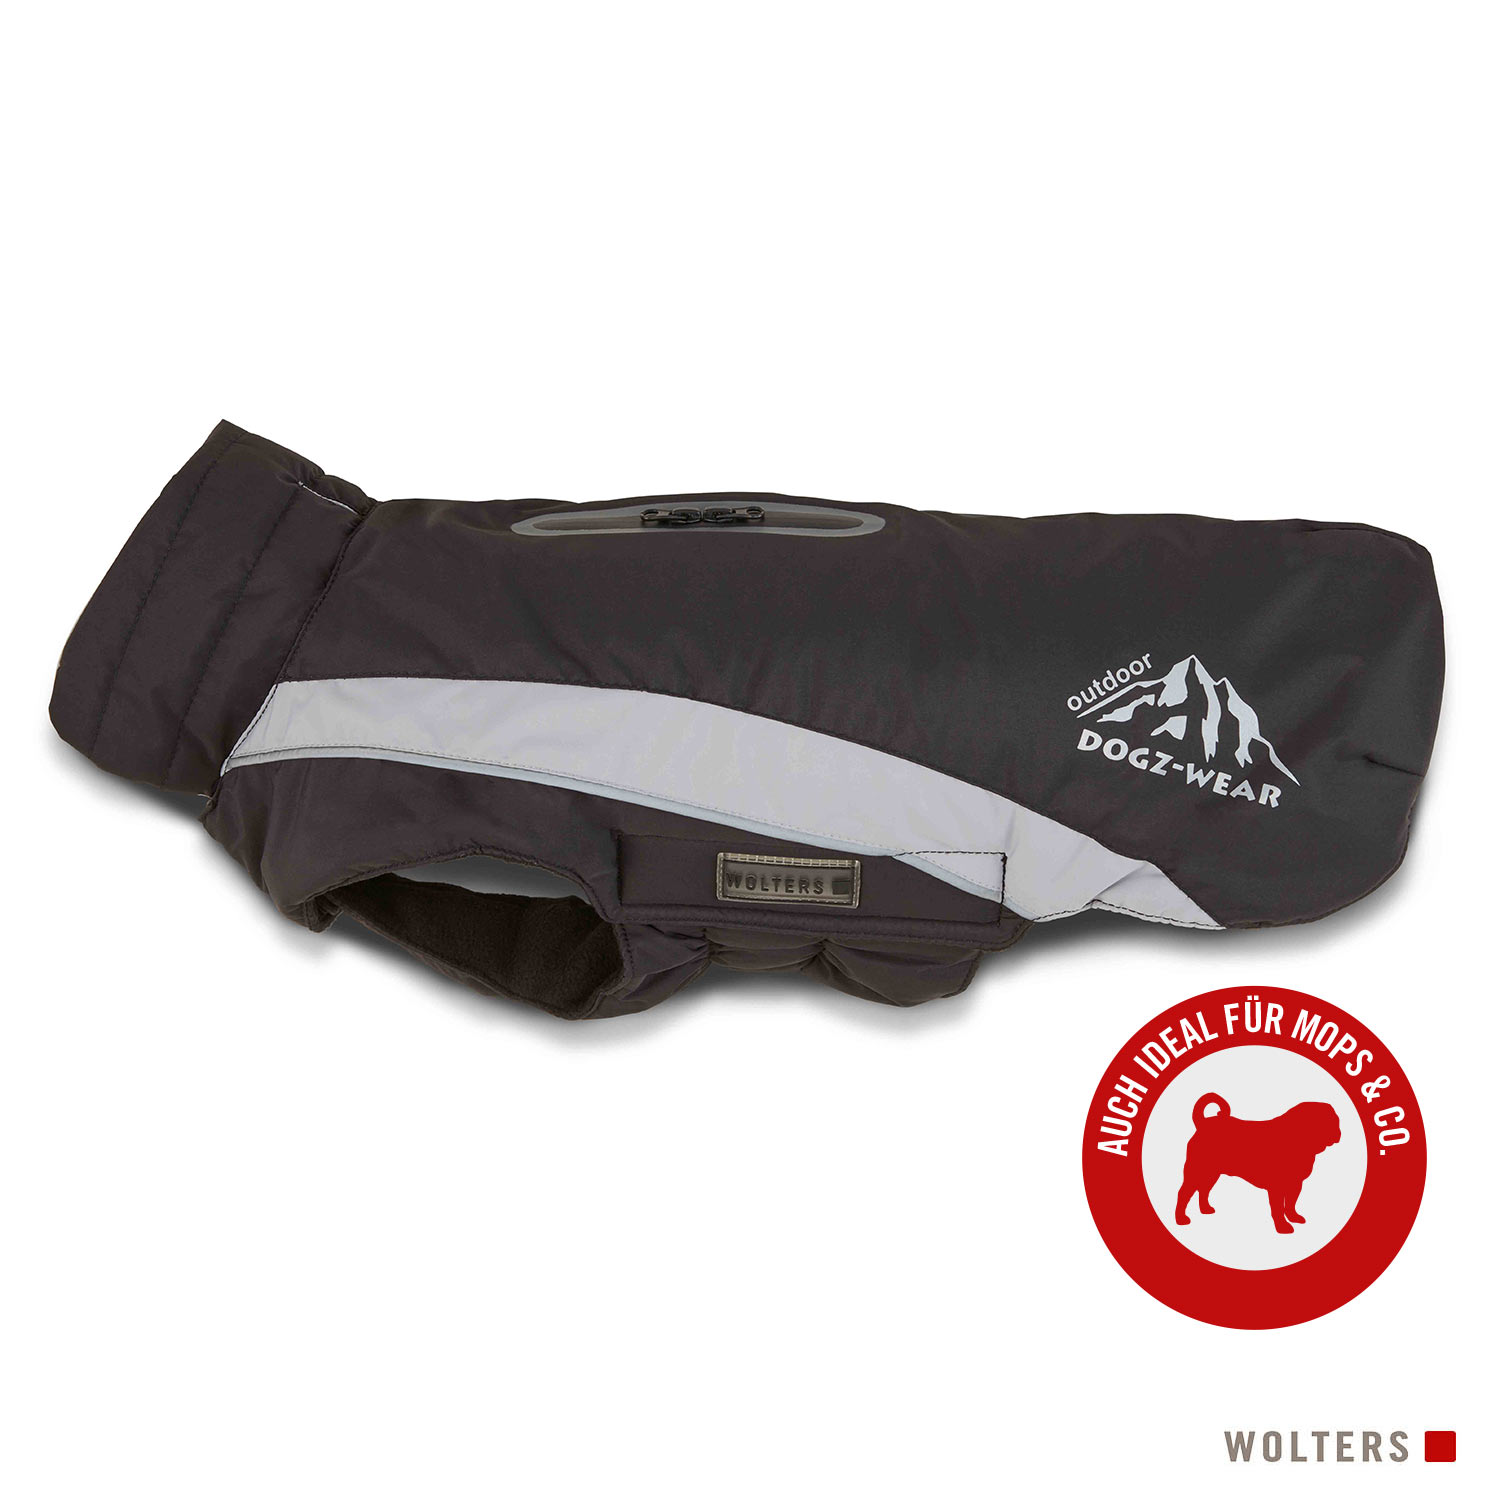 Wolters Skijacke Dogz Wear mit wasserdichtem Reißverschluss - für Mops & Co., schwarz/grau